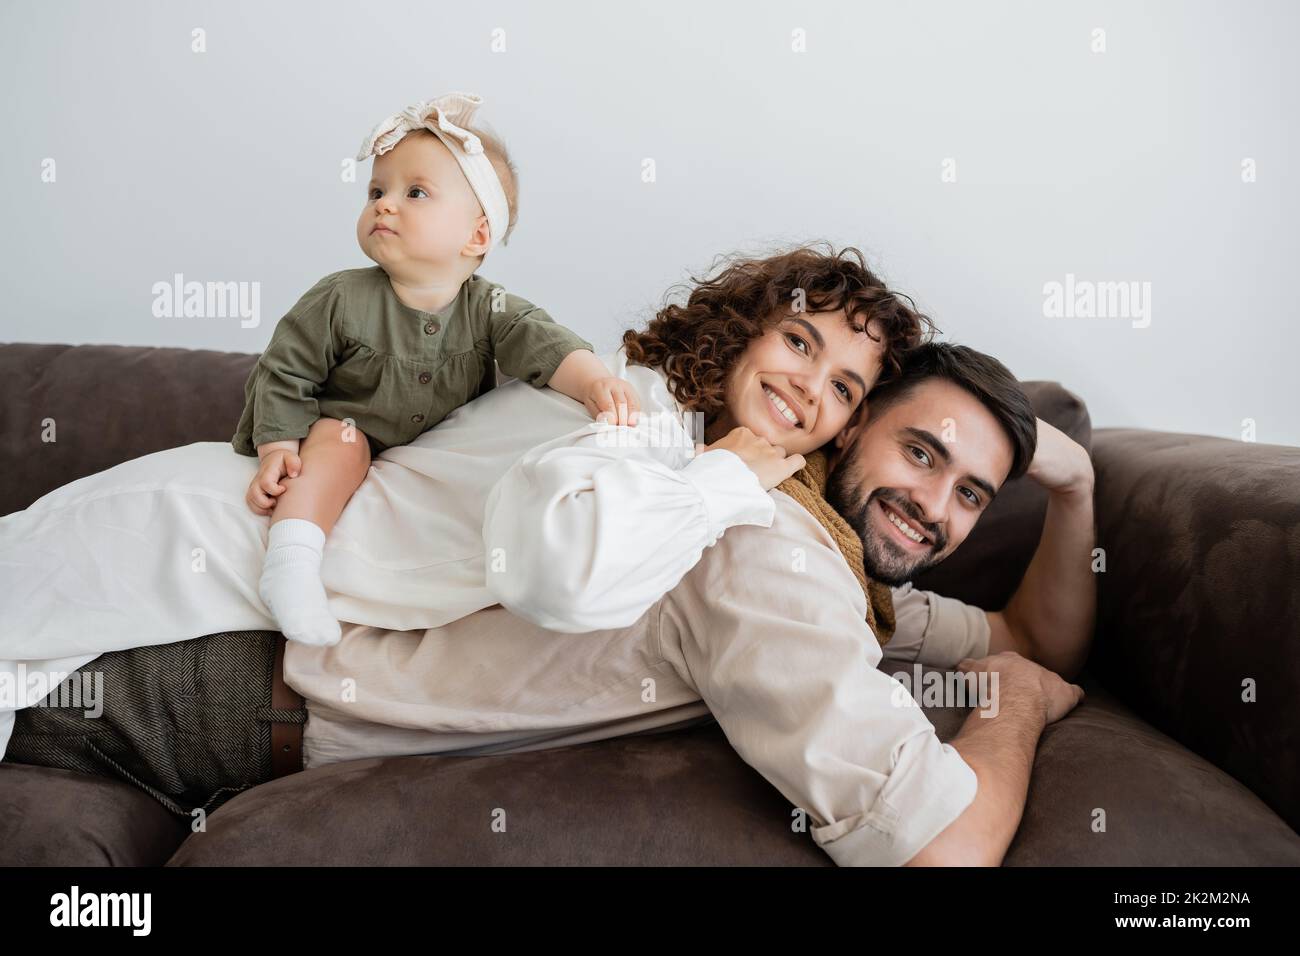 donna allegra e riccia e ragazza bambino sdraiata sulla schiena del marito bearded in soggiorno, immagine stock Foto Stock